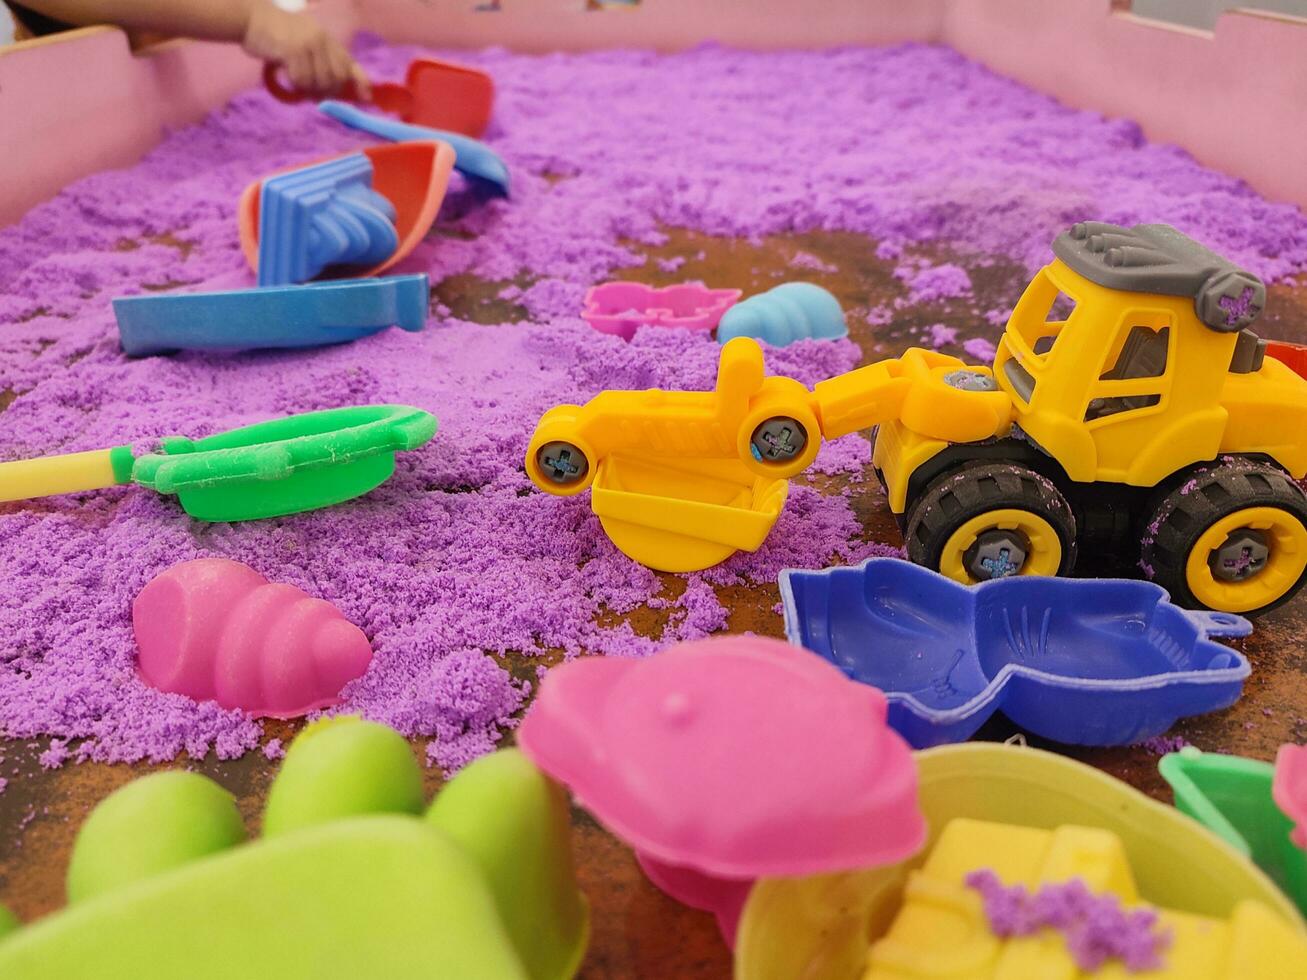 Plastic toy on kinetic sand pool photo